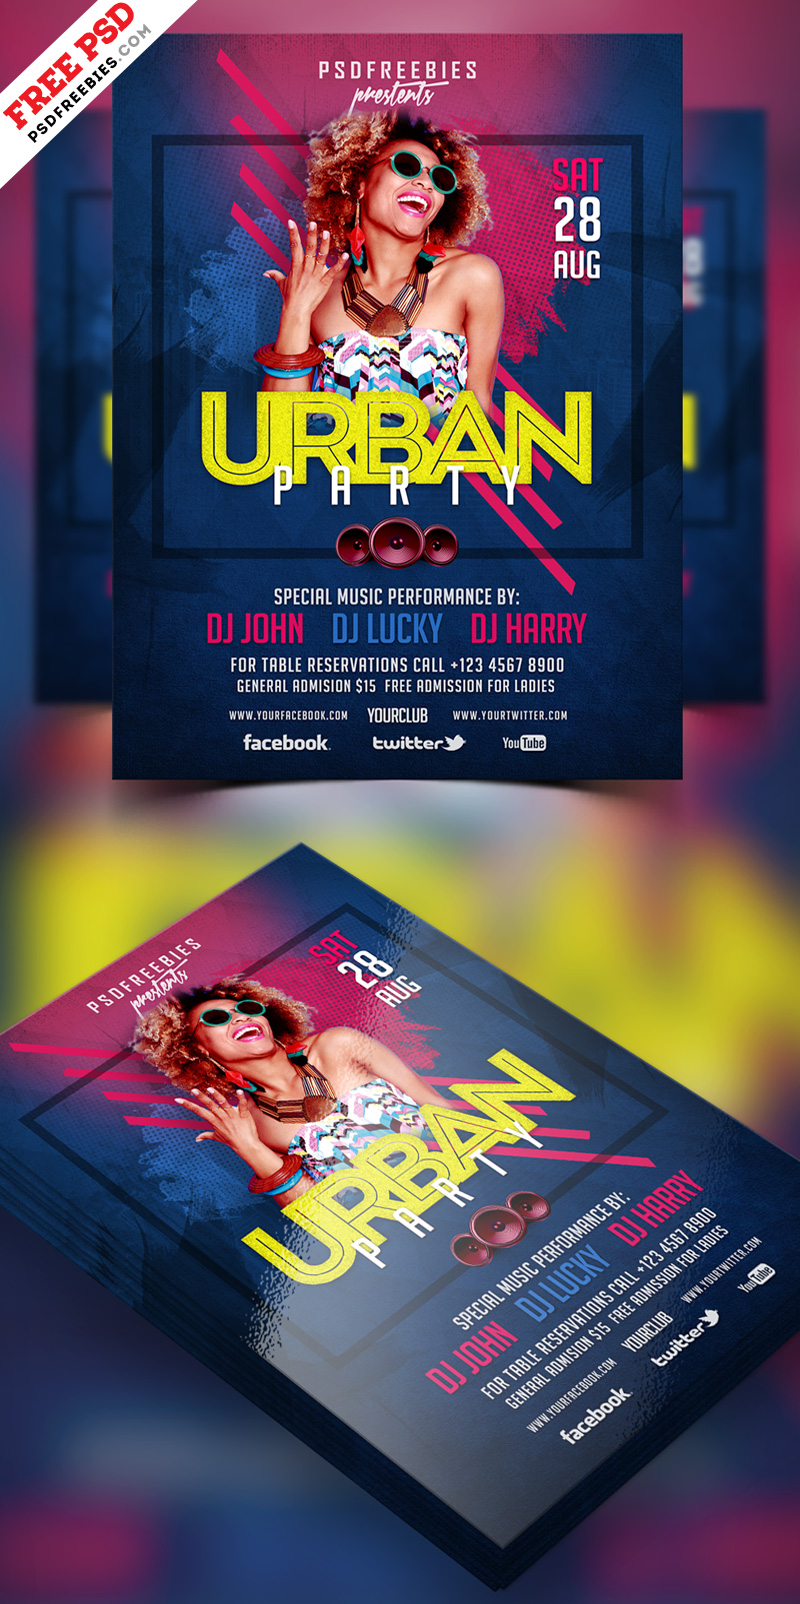 Urban Party Flyer Design PSD